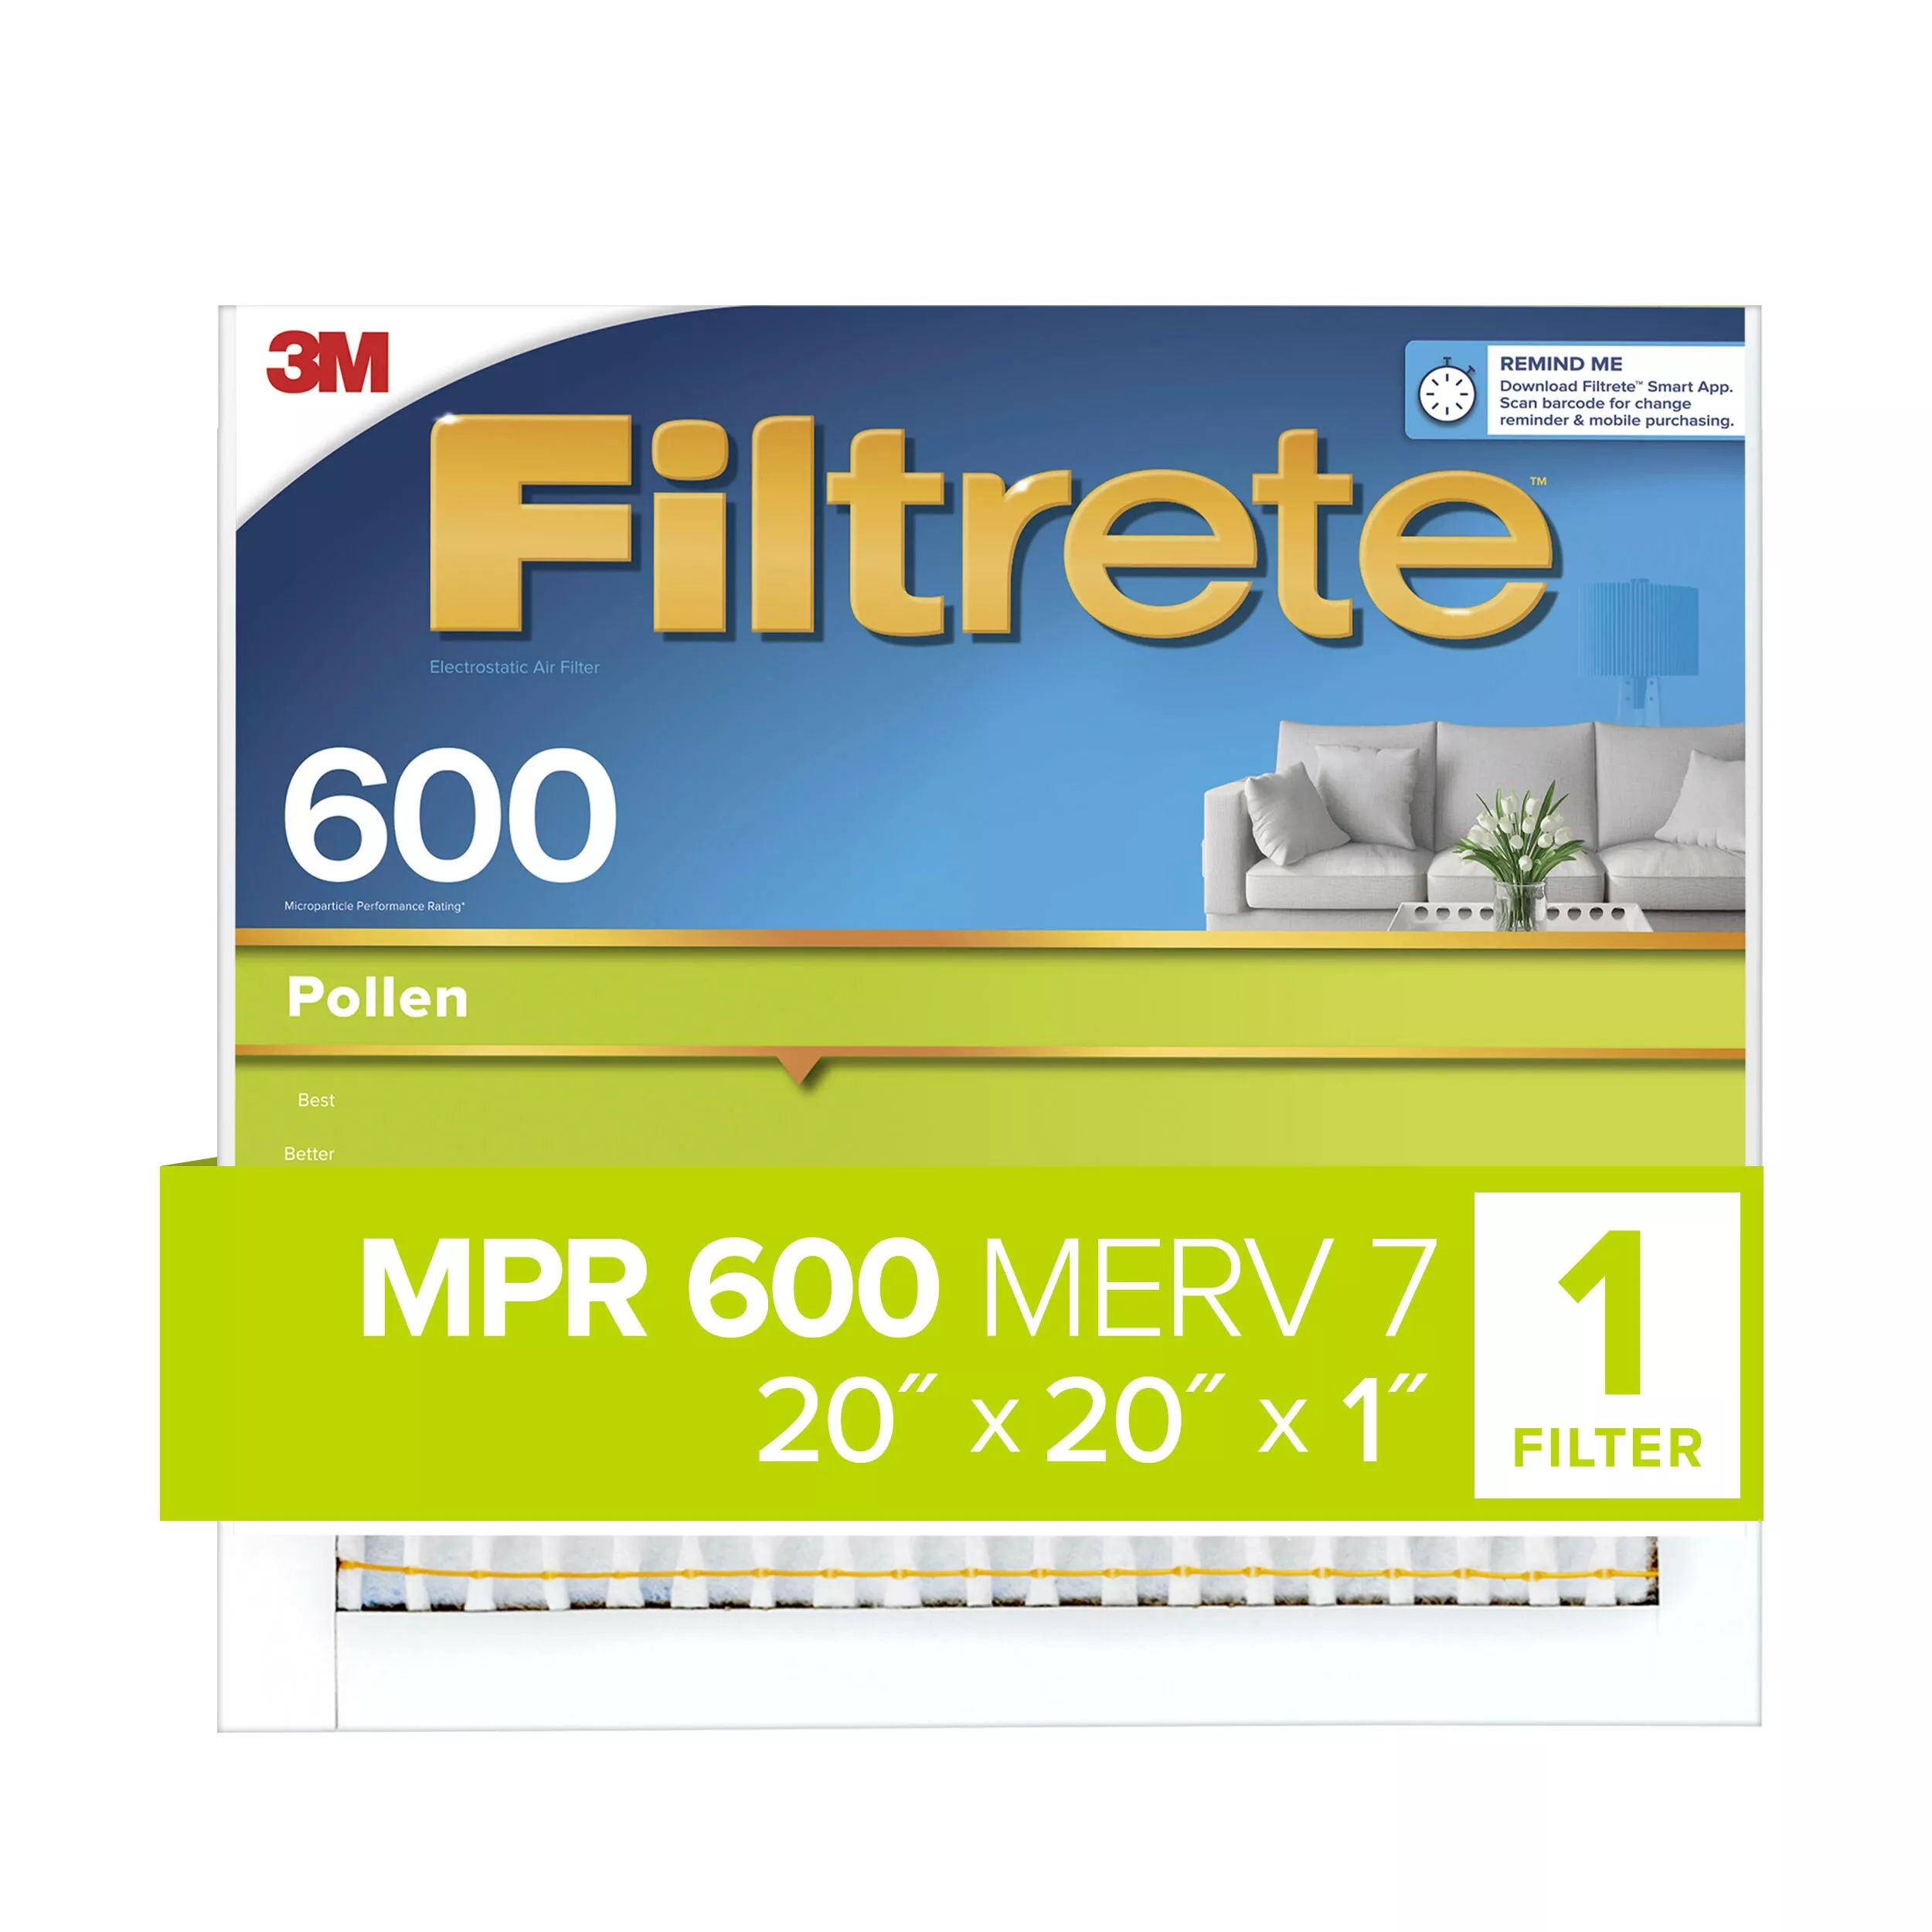 Filtrete™ Pollen Air Filter, 600 MPR, 9832-4, 20 in x 20 in x 1 in (50.8
cm x 50.8 cm x 2.54 cm)